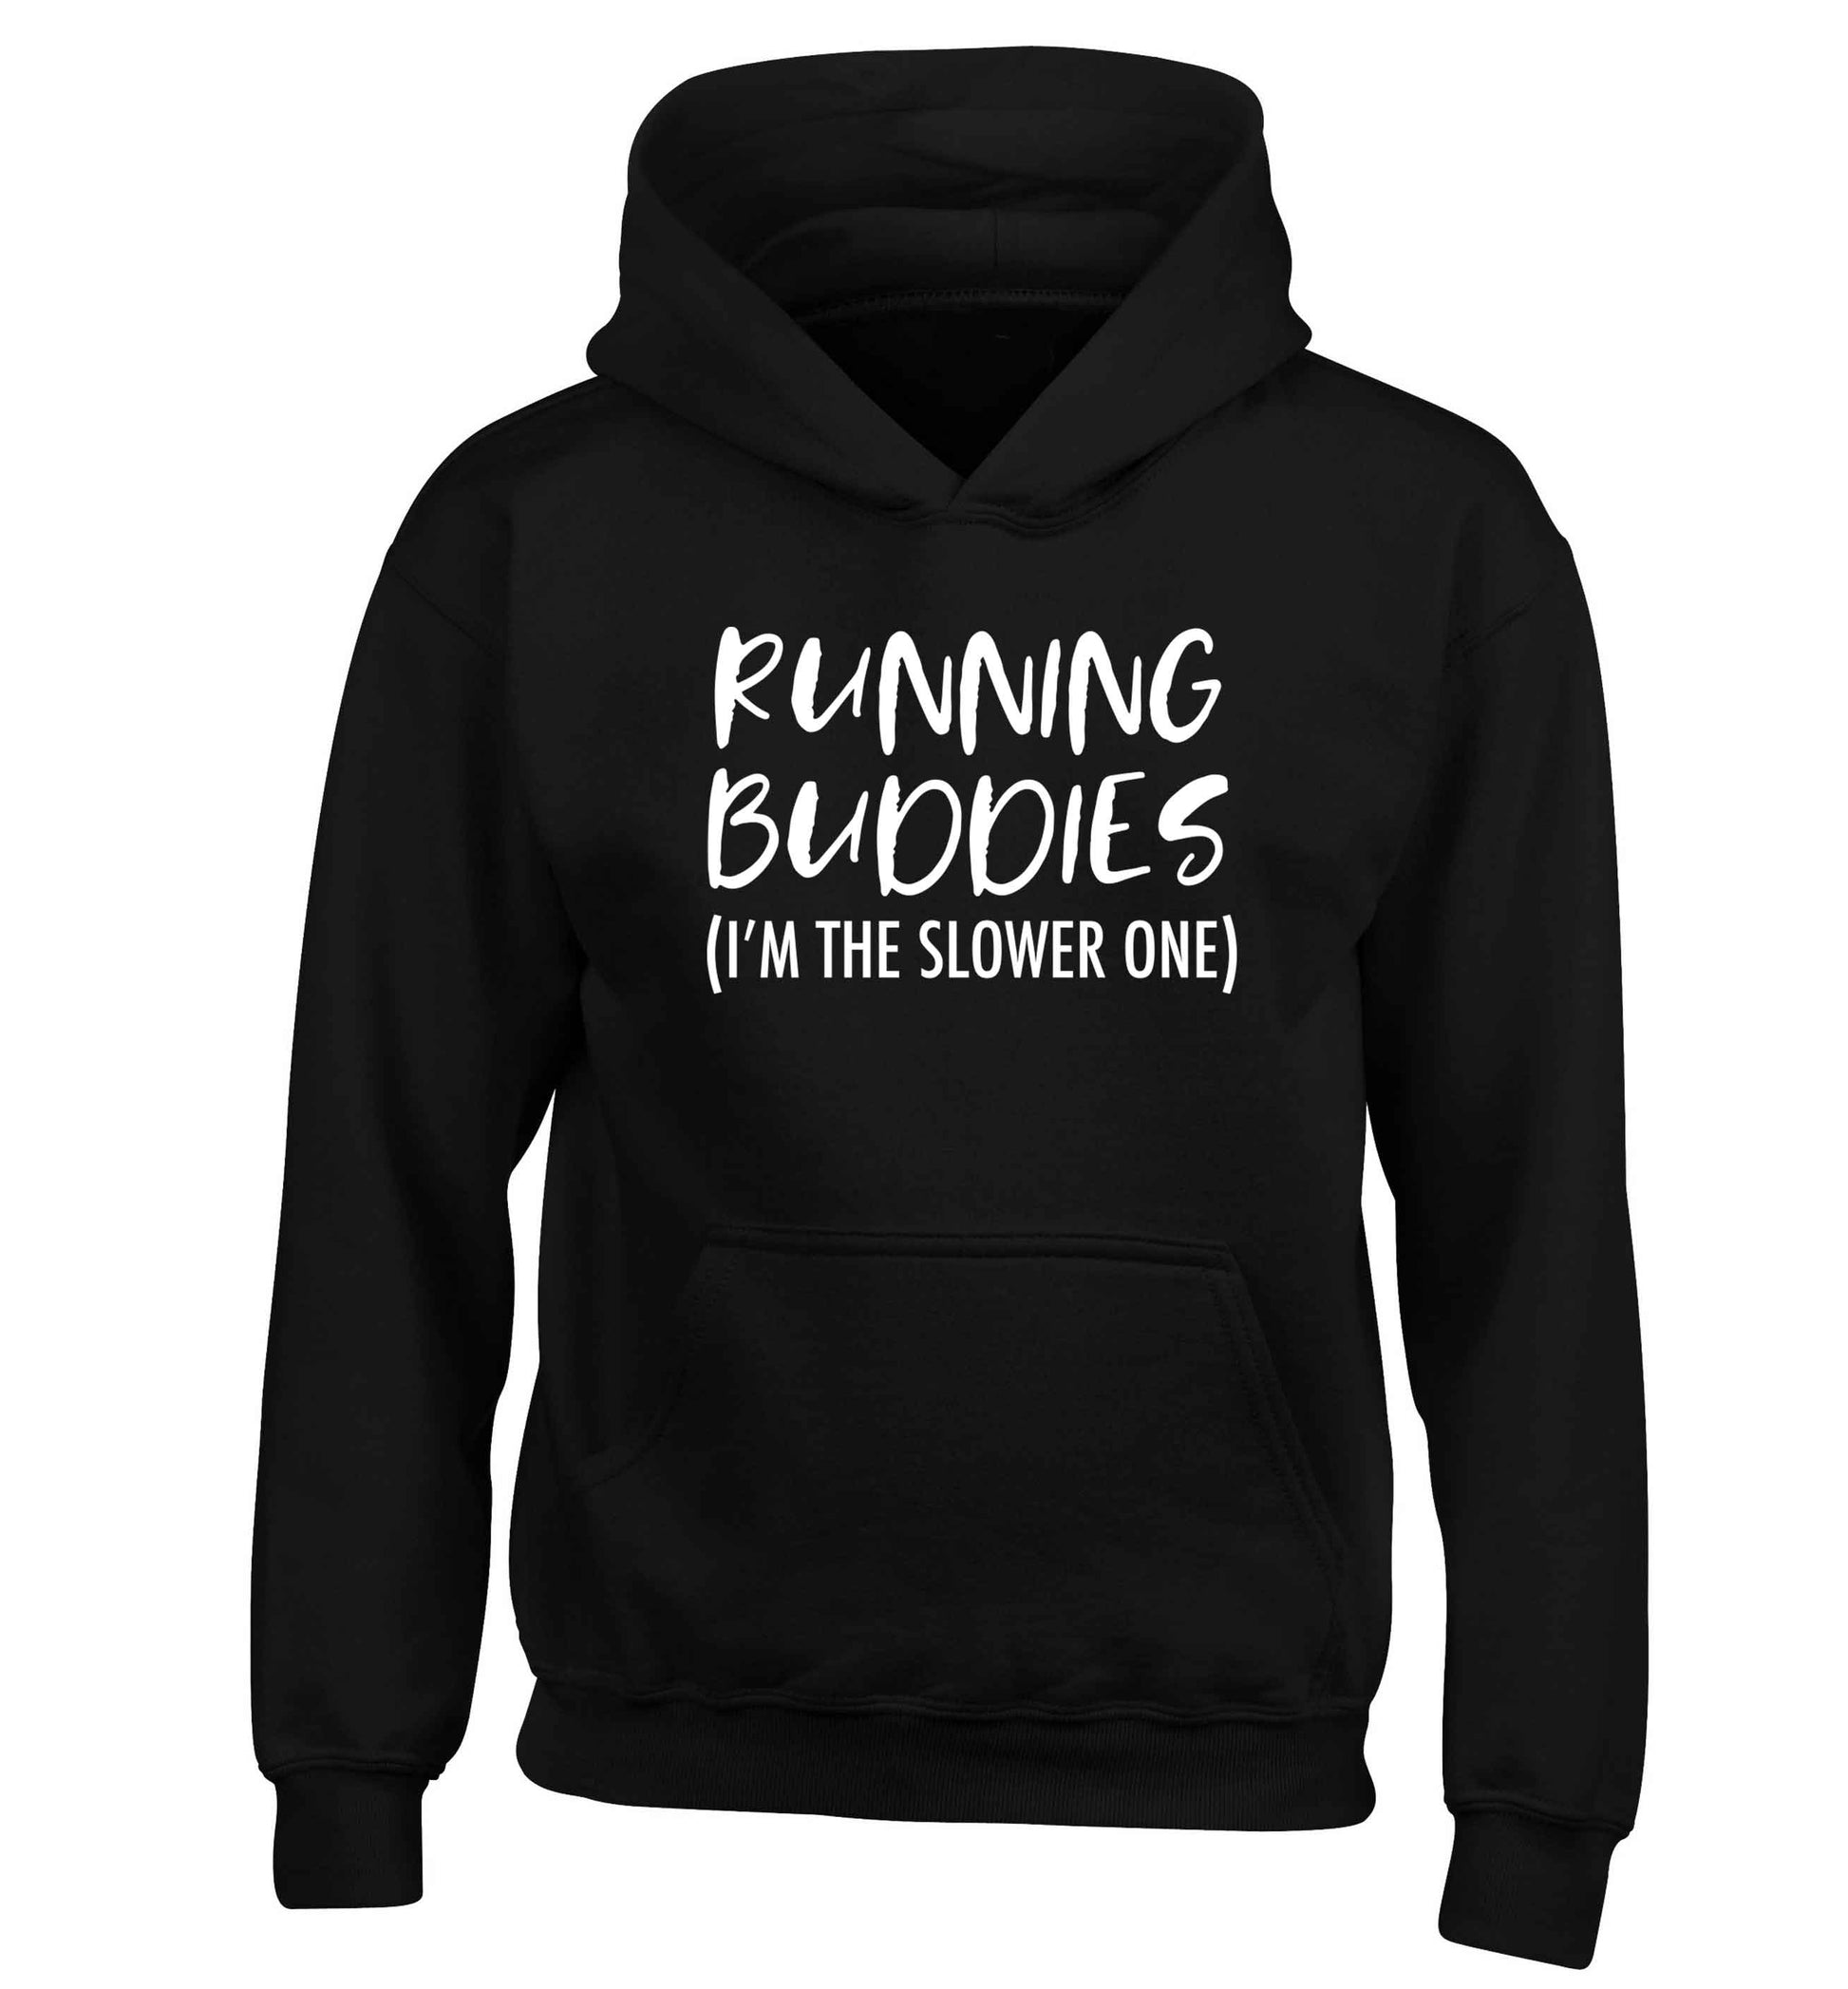 Running buddies (I'm the slower one) children's black hoodie 12-13 Years